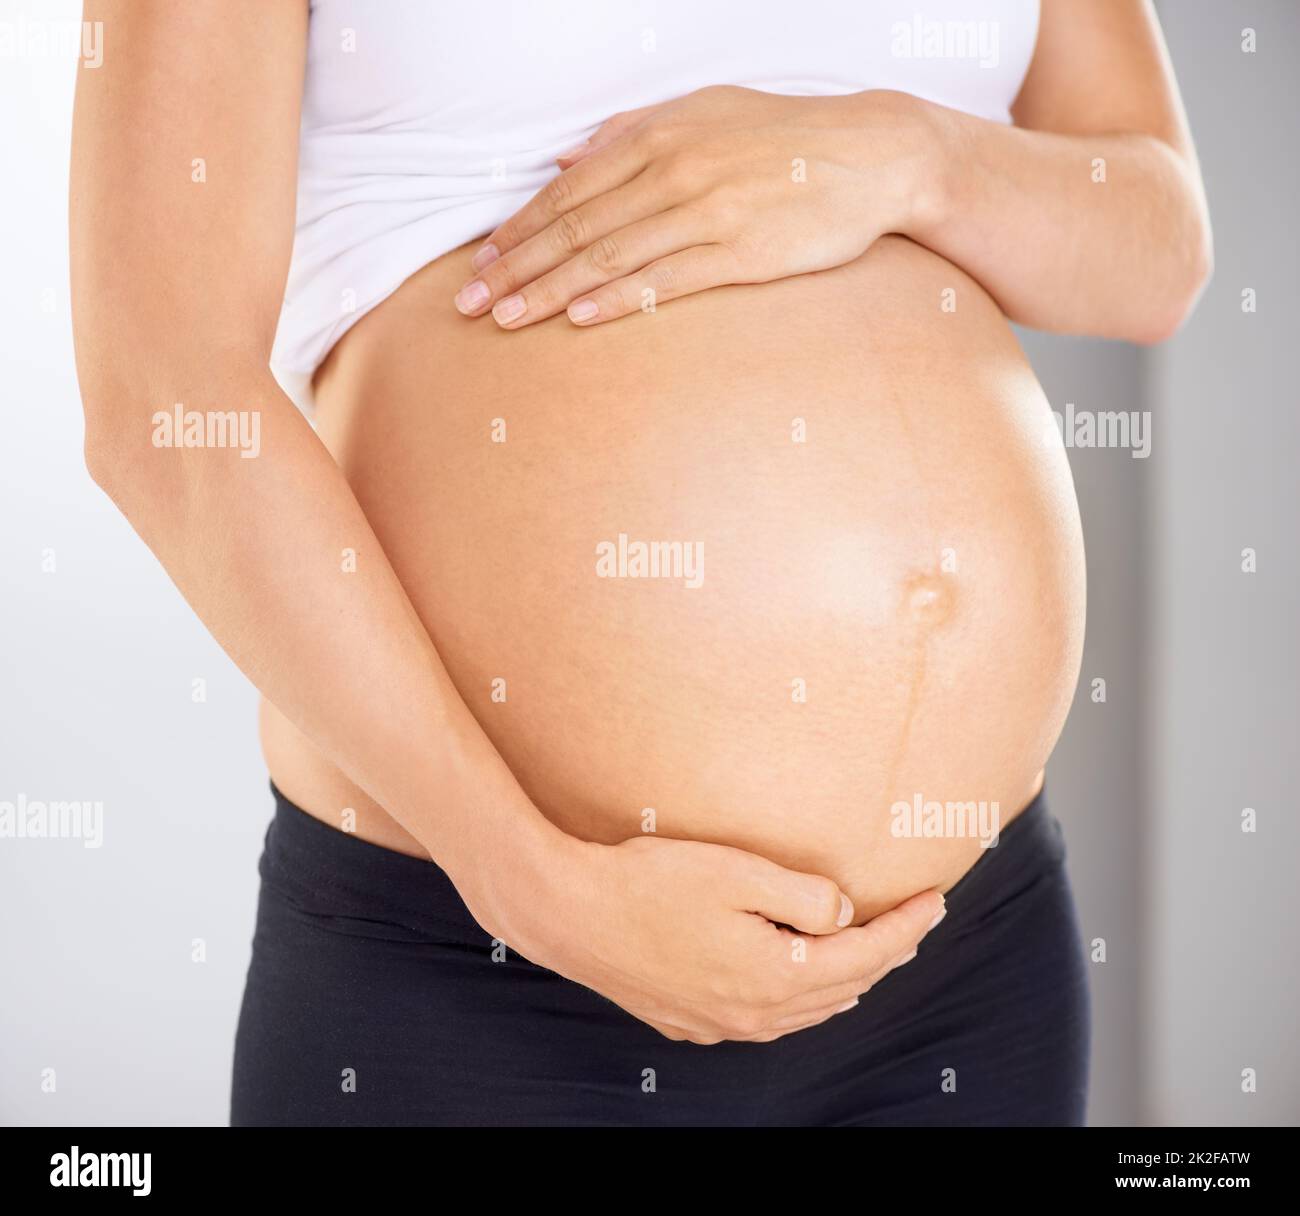 Ich liebe dich bereits. Zugeschnittenes Bild einer Schwangeren, die ihren Bauch liebevoll hält. Stockfoto